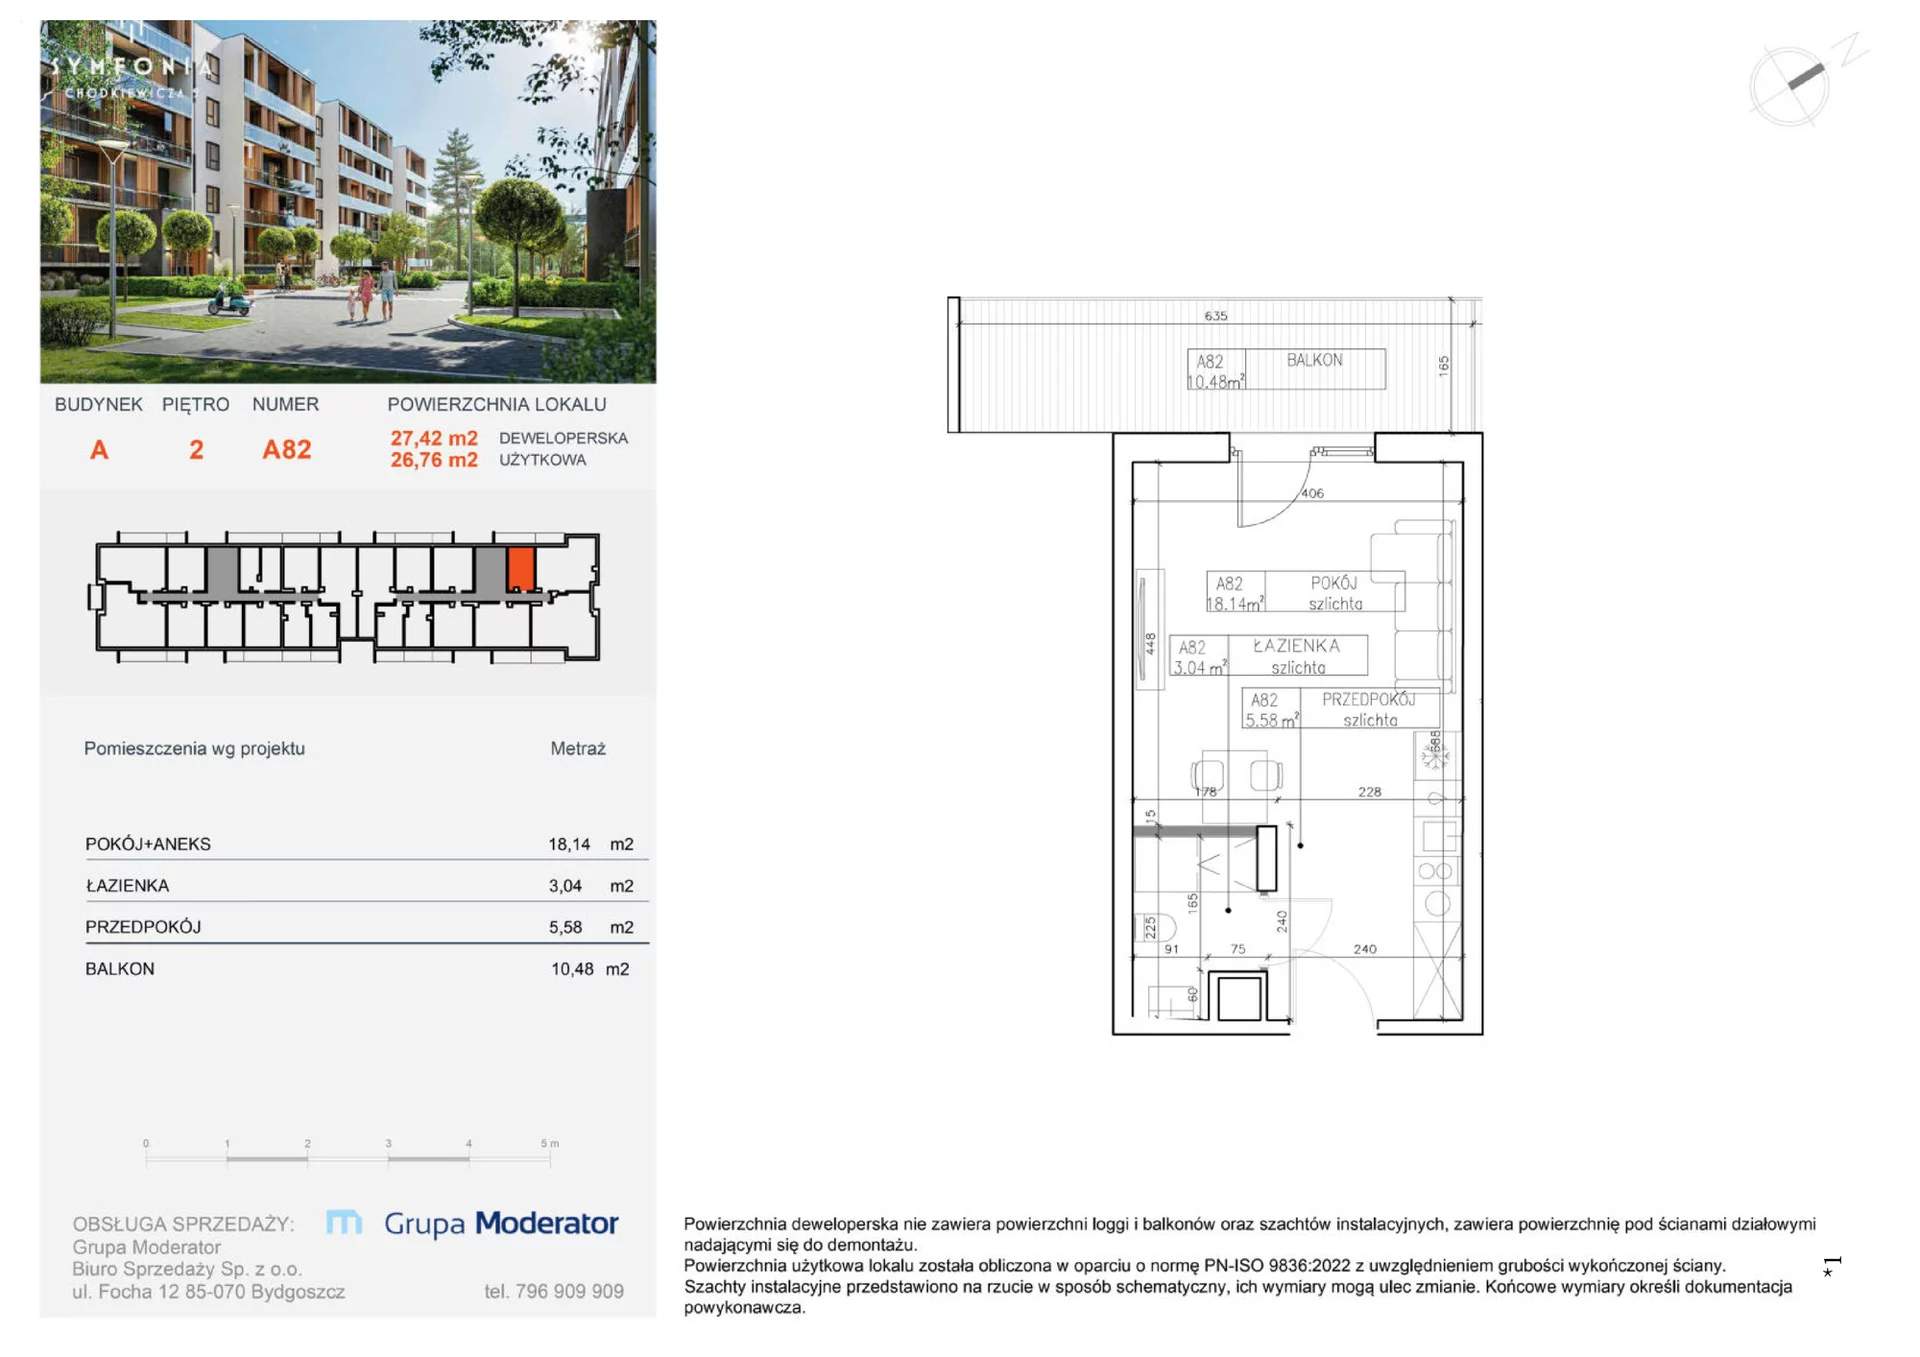 Apartament na sprzedaż 26,76 m², piętro 2, oferta nr A82